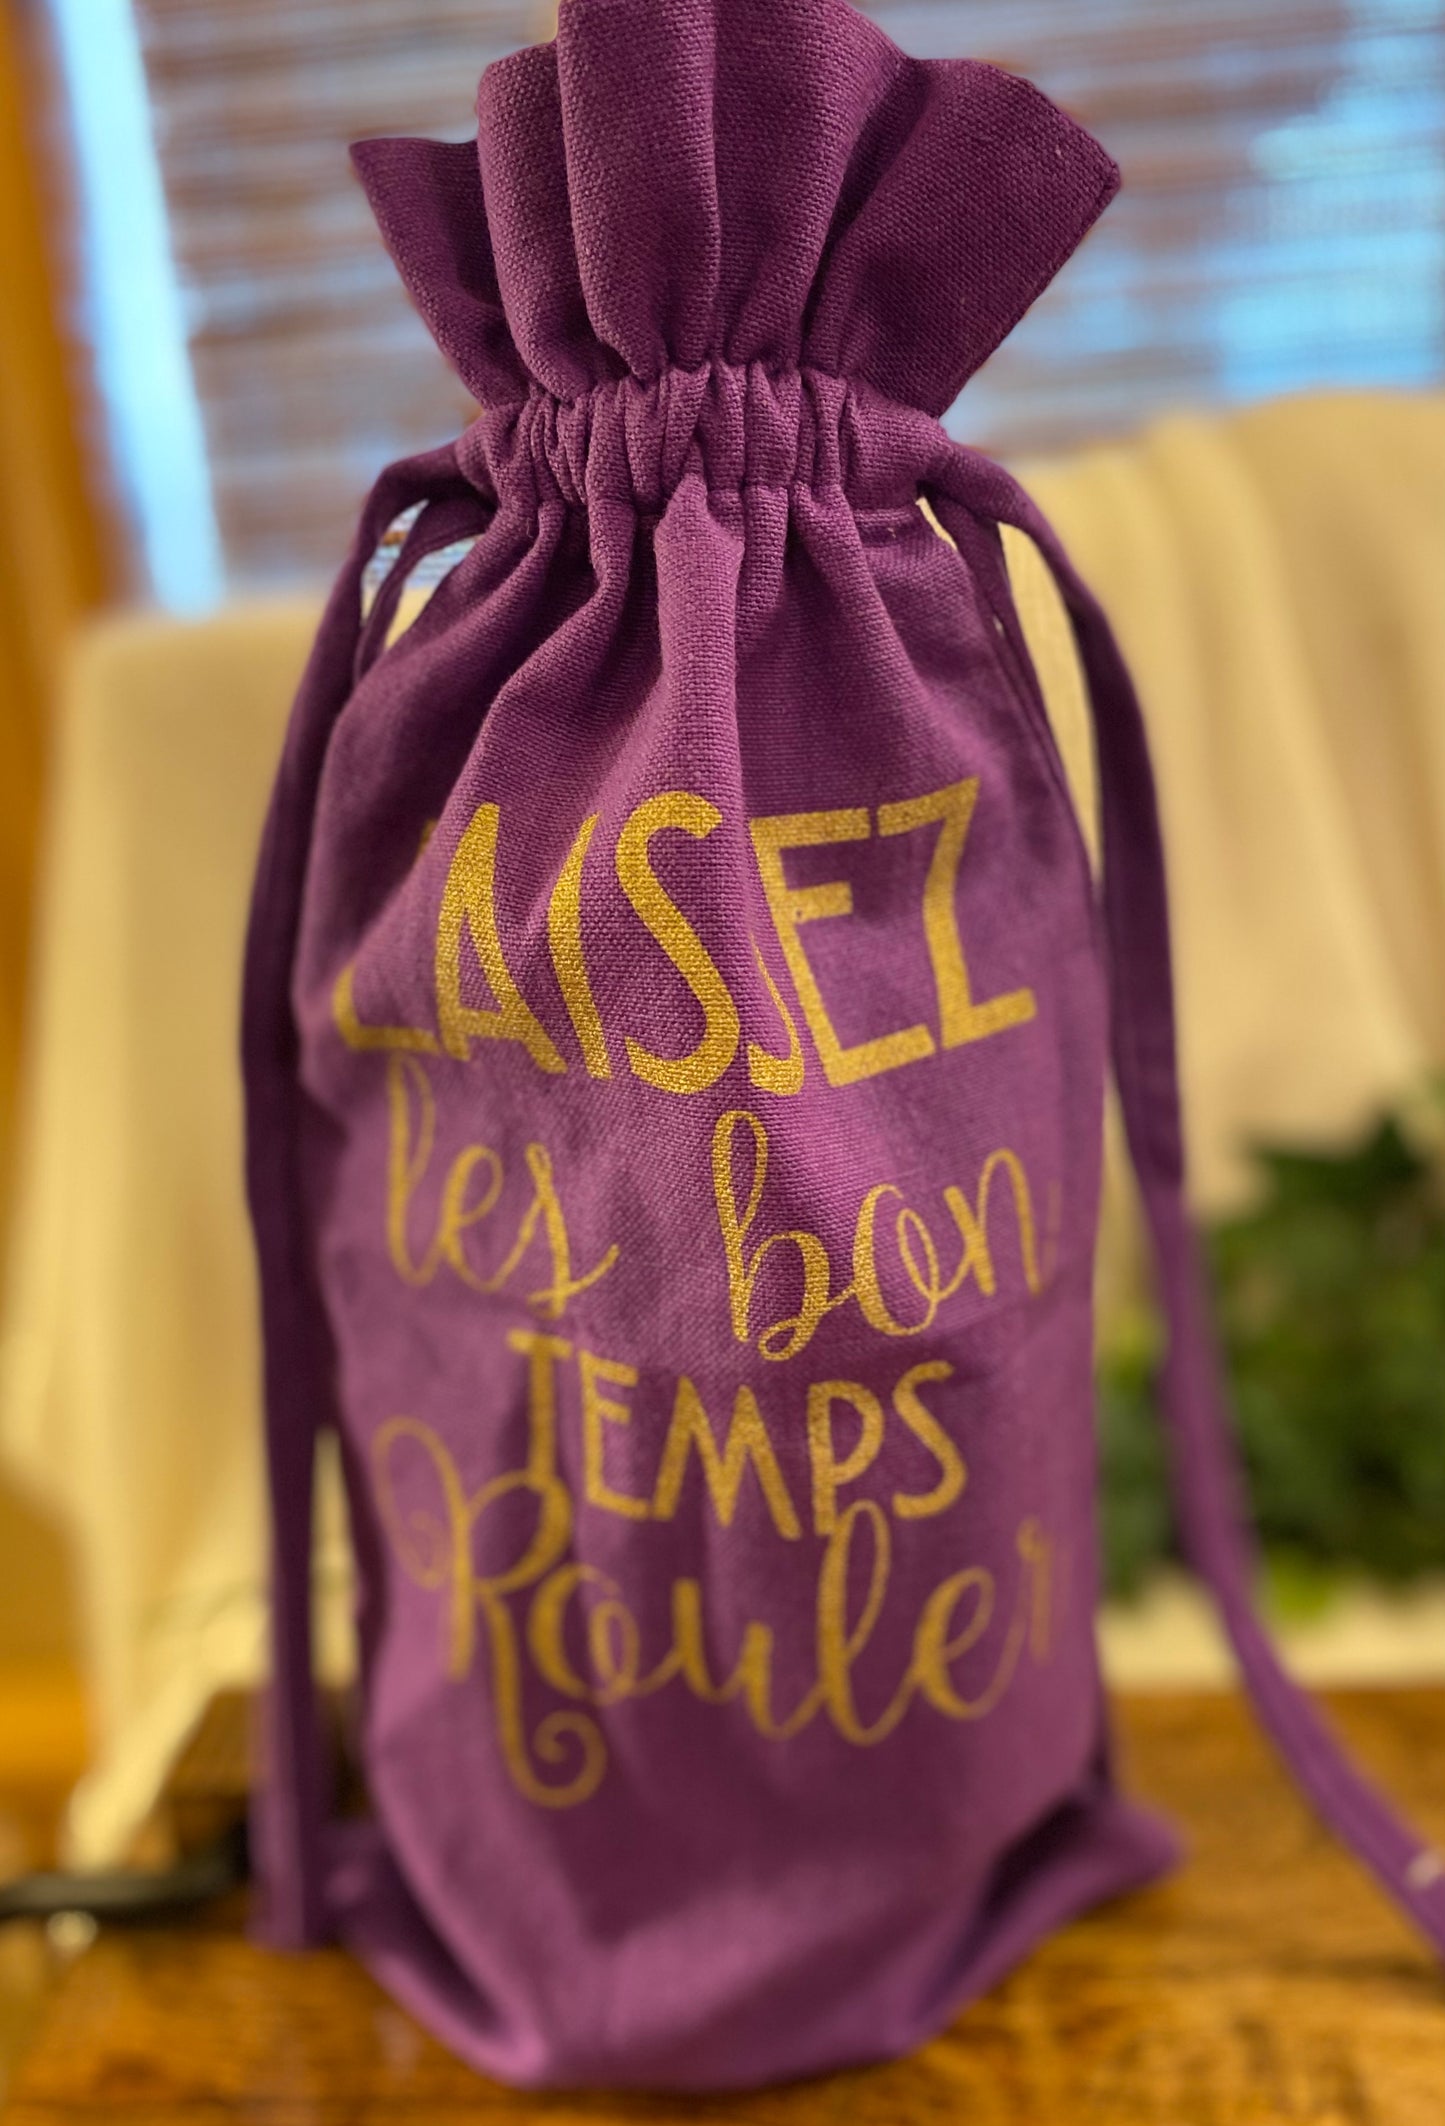 Mardi gras wine bottle holder 